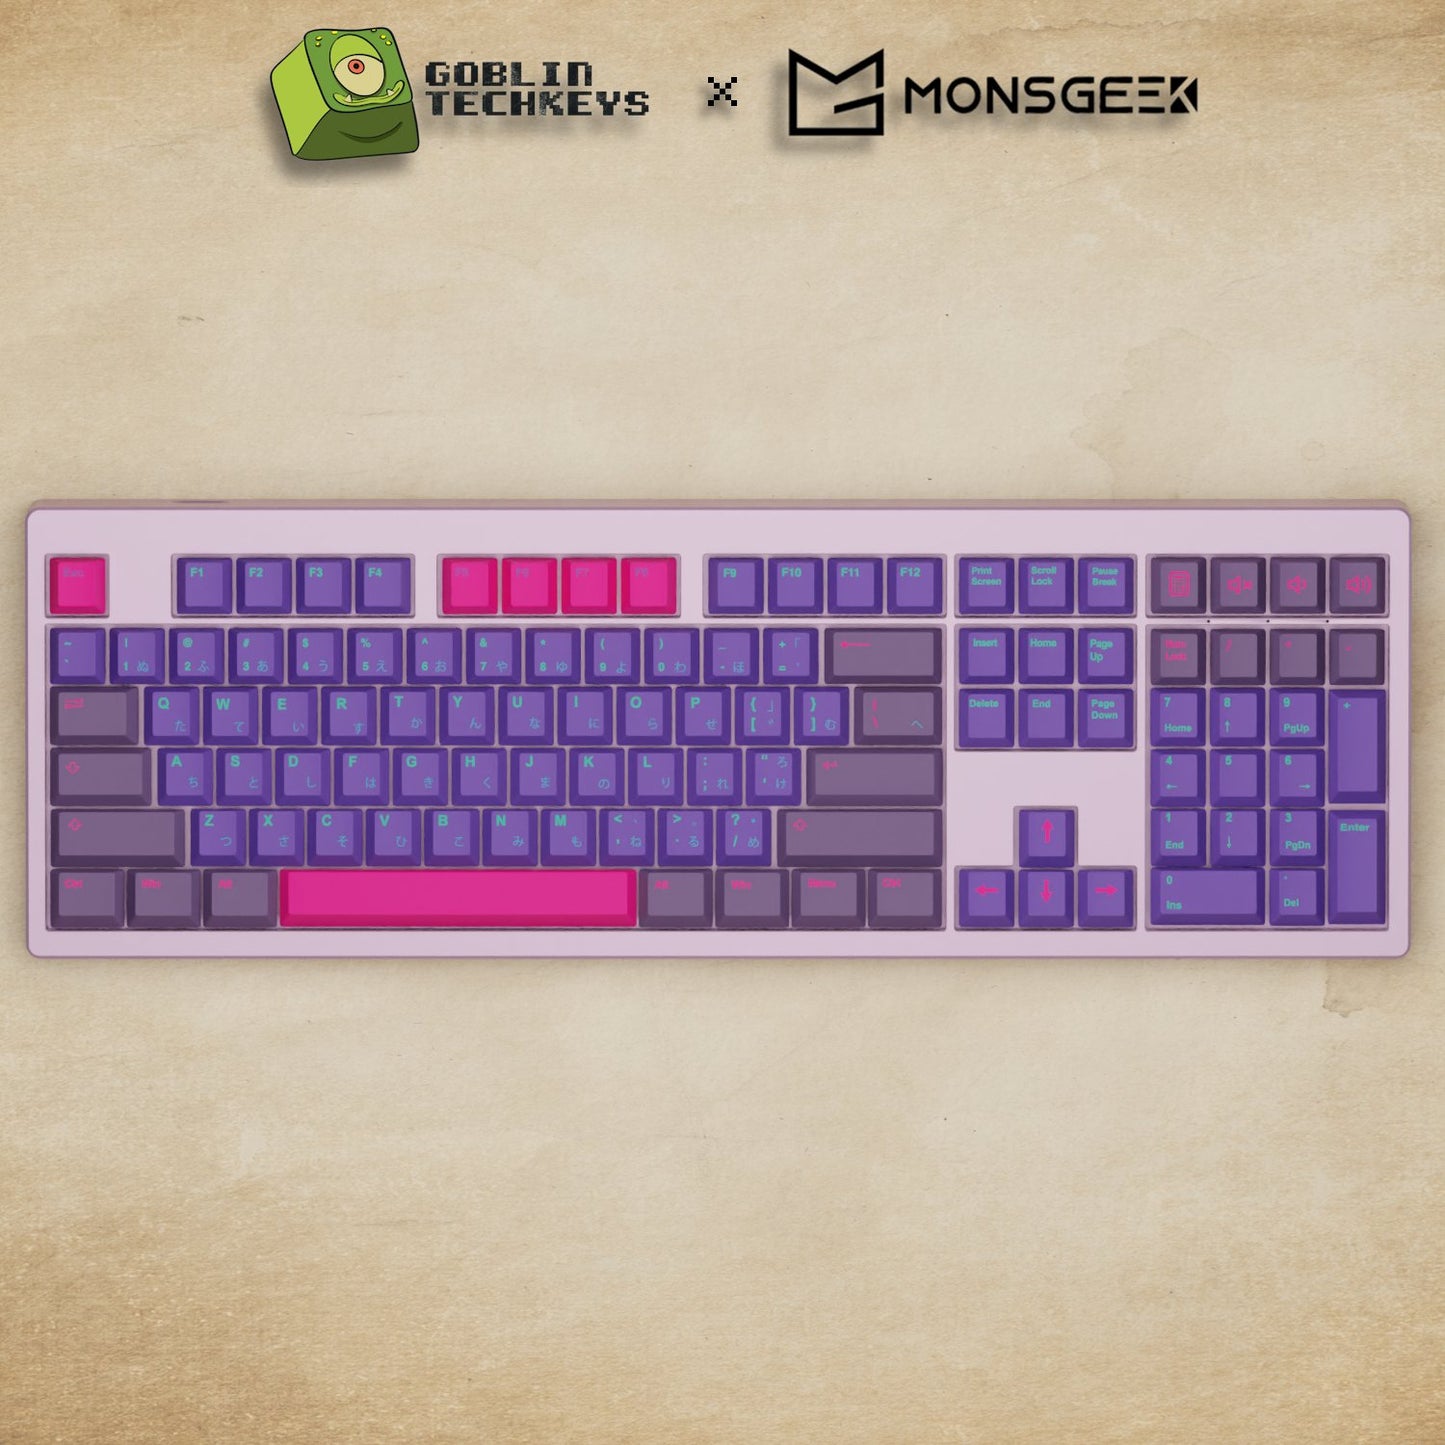 Monsgeek M5 - 100% Techno Mechanical Keyboard - Goblintechkeys